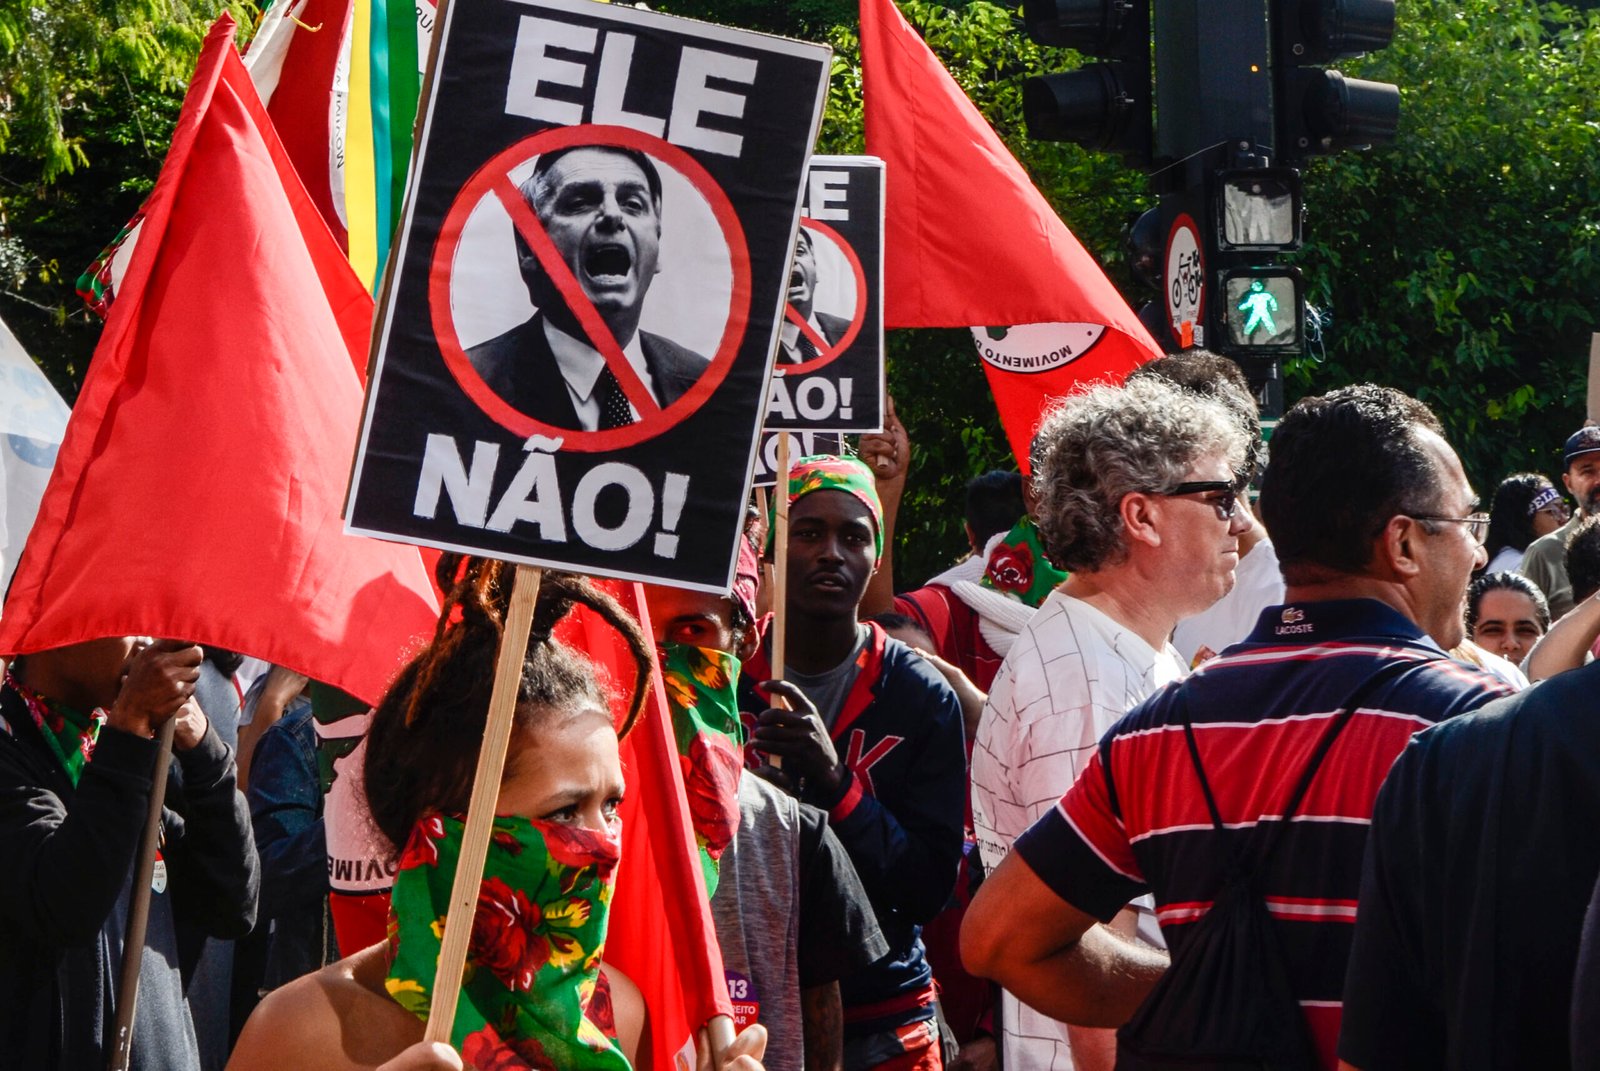 En este momento estás viendo Contra todos los males de este mundo: elecciones en Brasil, ballotage por la democracia